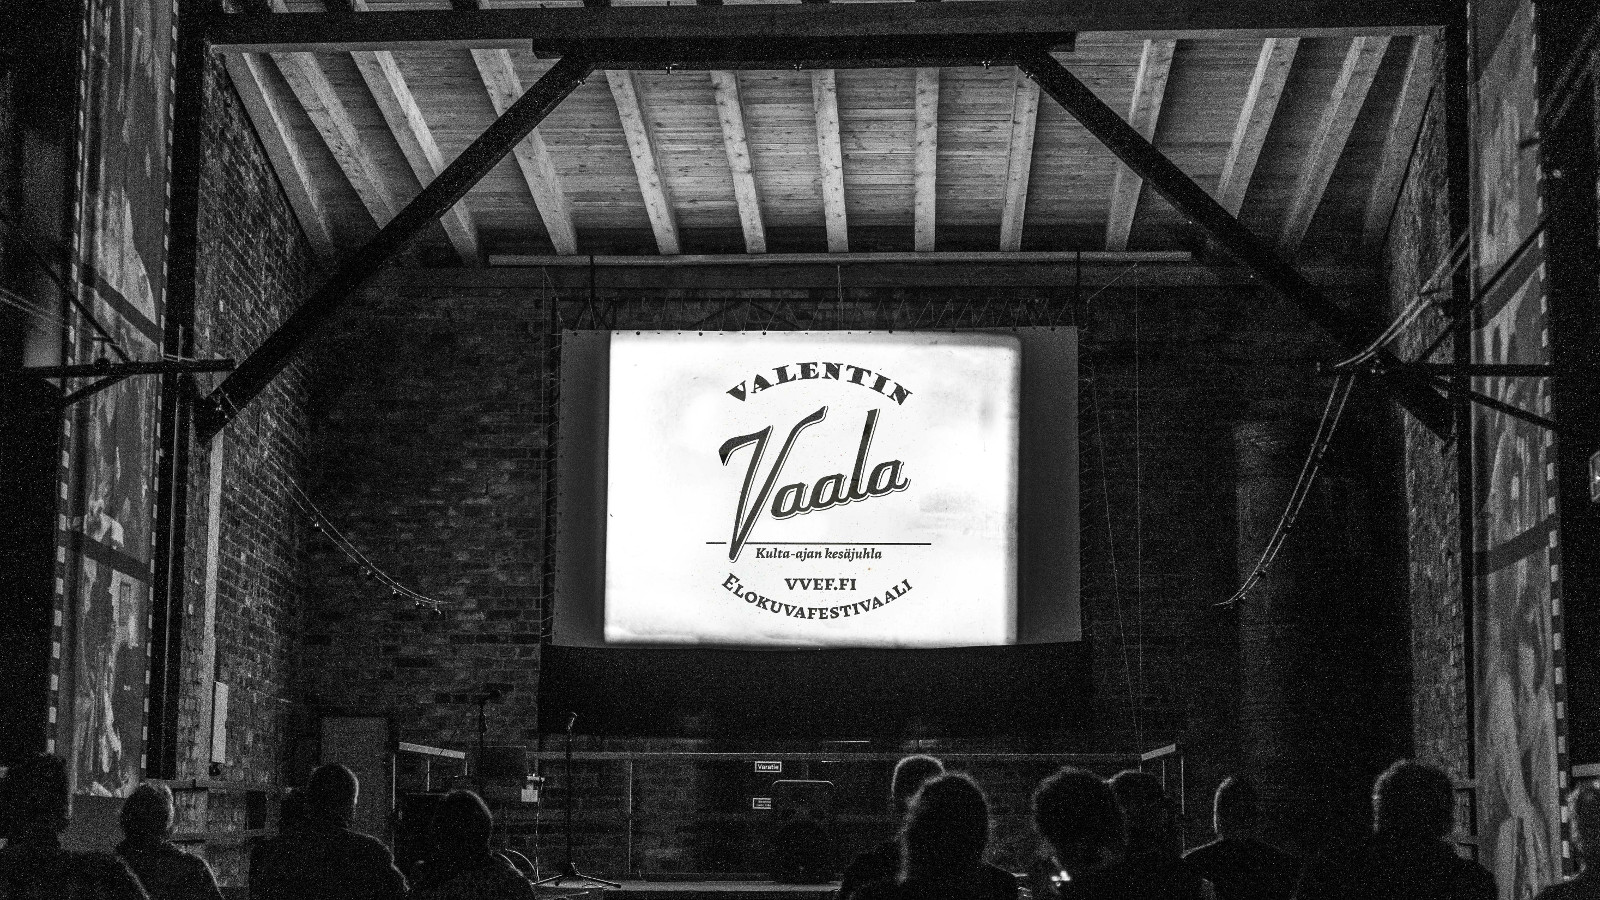 Kuvassa on vanhan ladon katsomo ja lautanäyttämö ja sen keskellä on pieni juliste, jossa lukee Valentin Vaala elokuvafestivaali. Lato on harmaa.